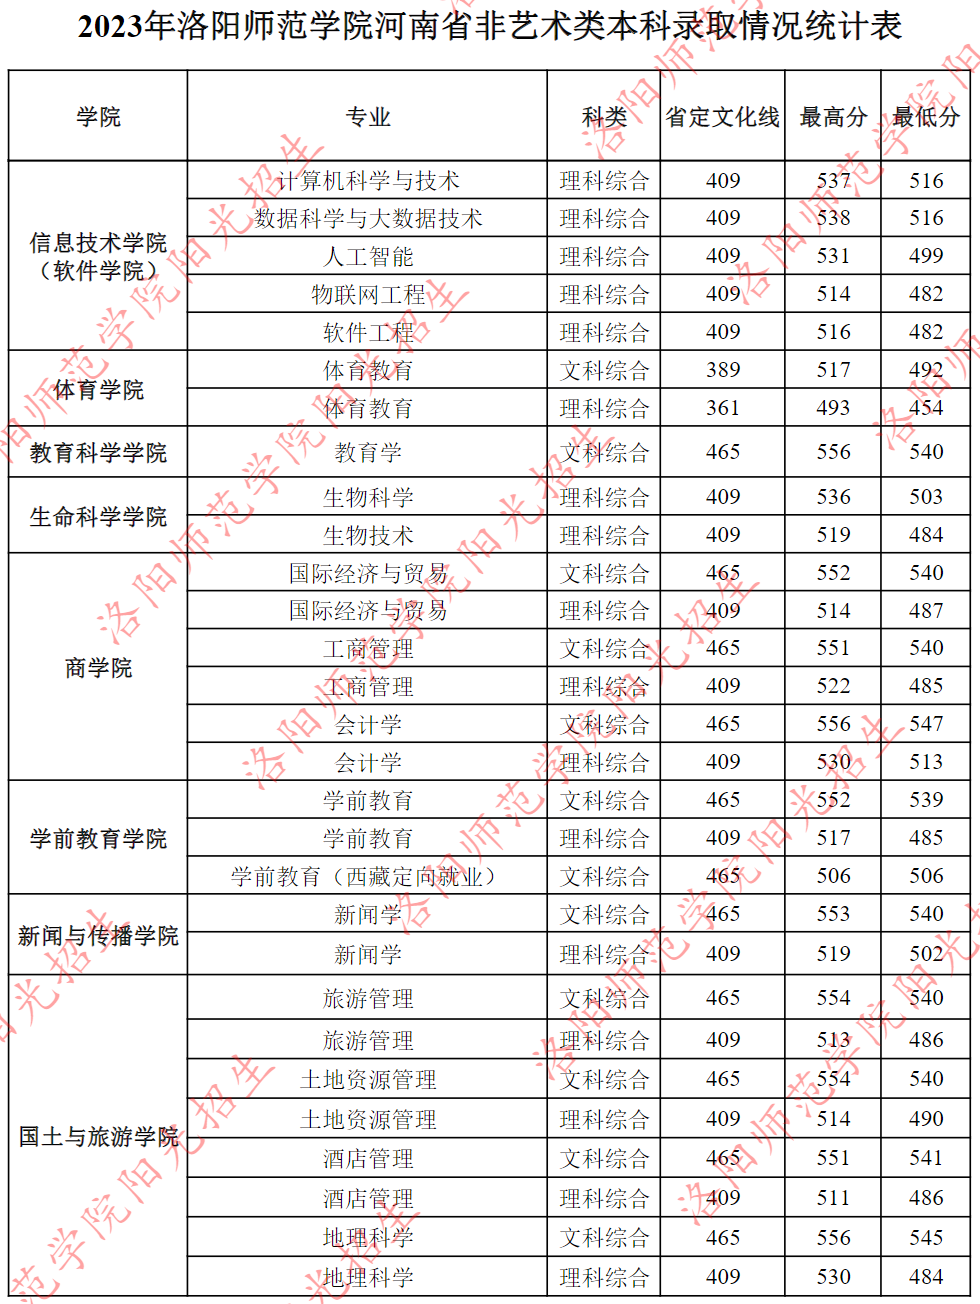 2023年洛阳师范学院河南省非艺术类本科录取情况统计表